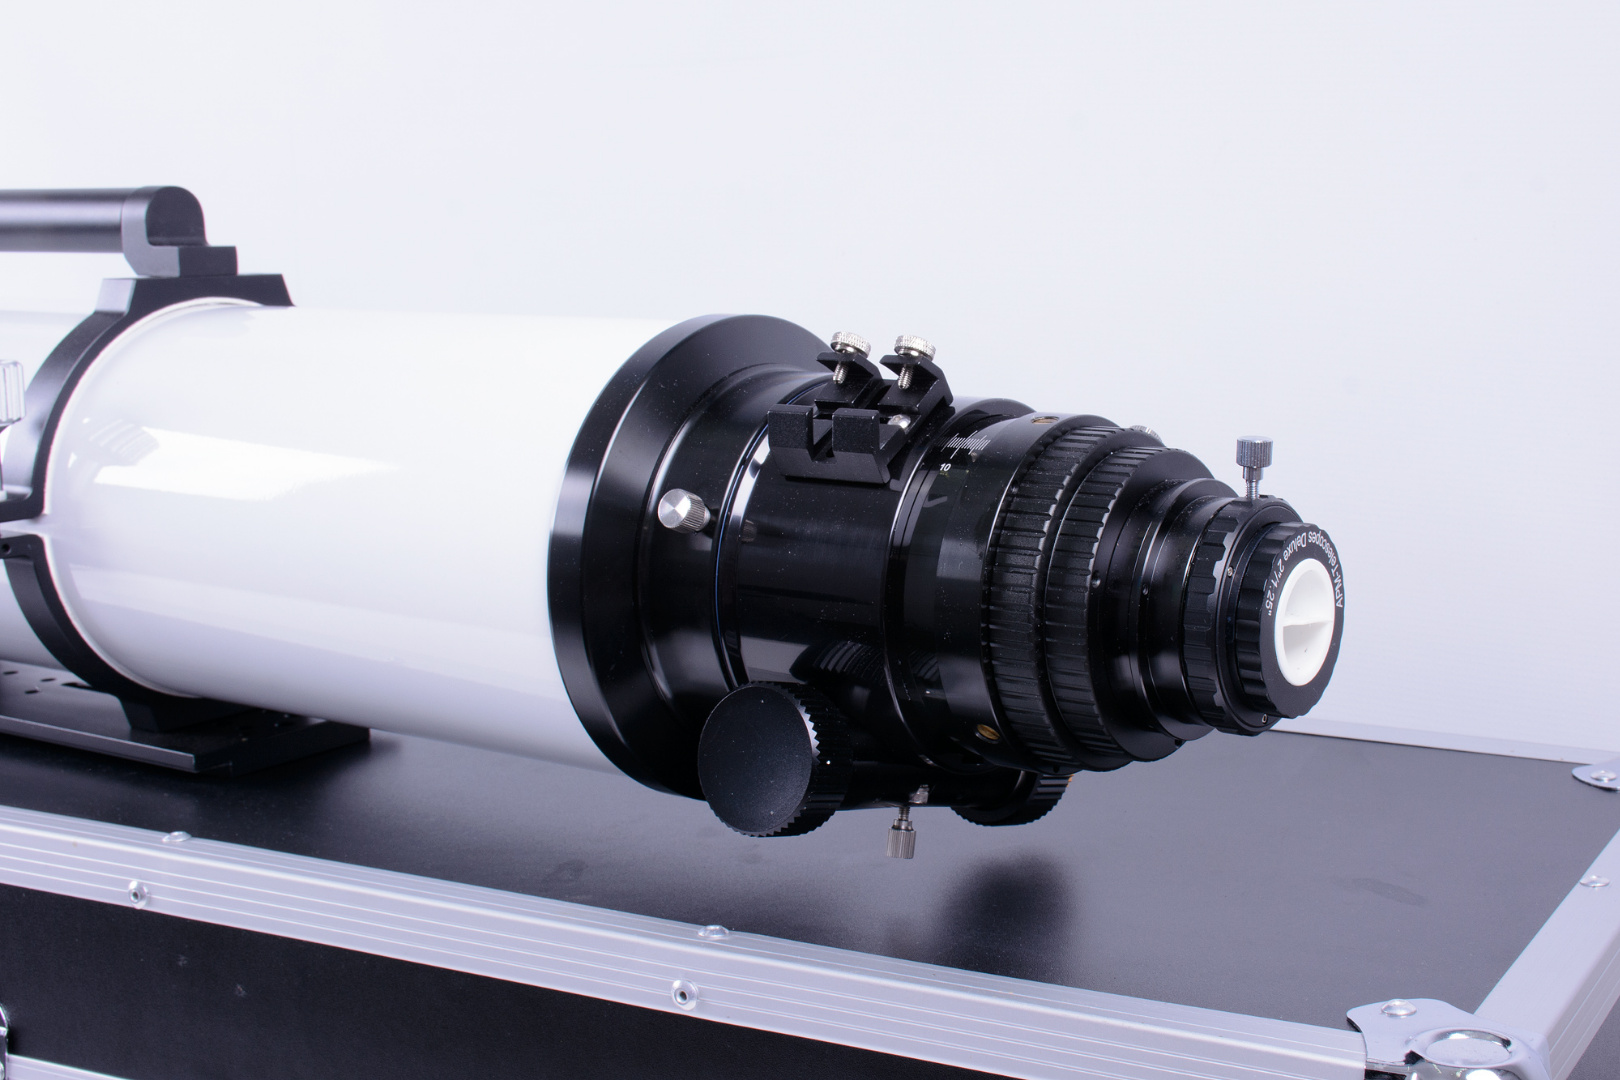 APM 152mm 1200FL ED APO Refractor Telescope - 3' R&P Focuser Mint